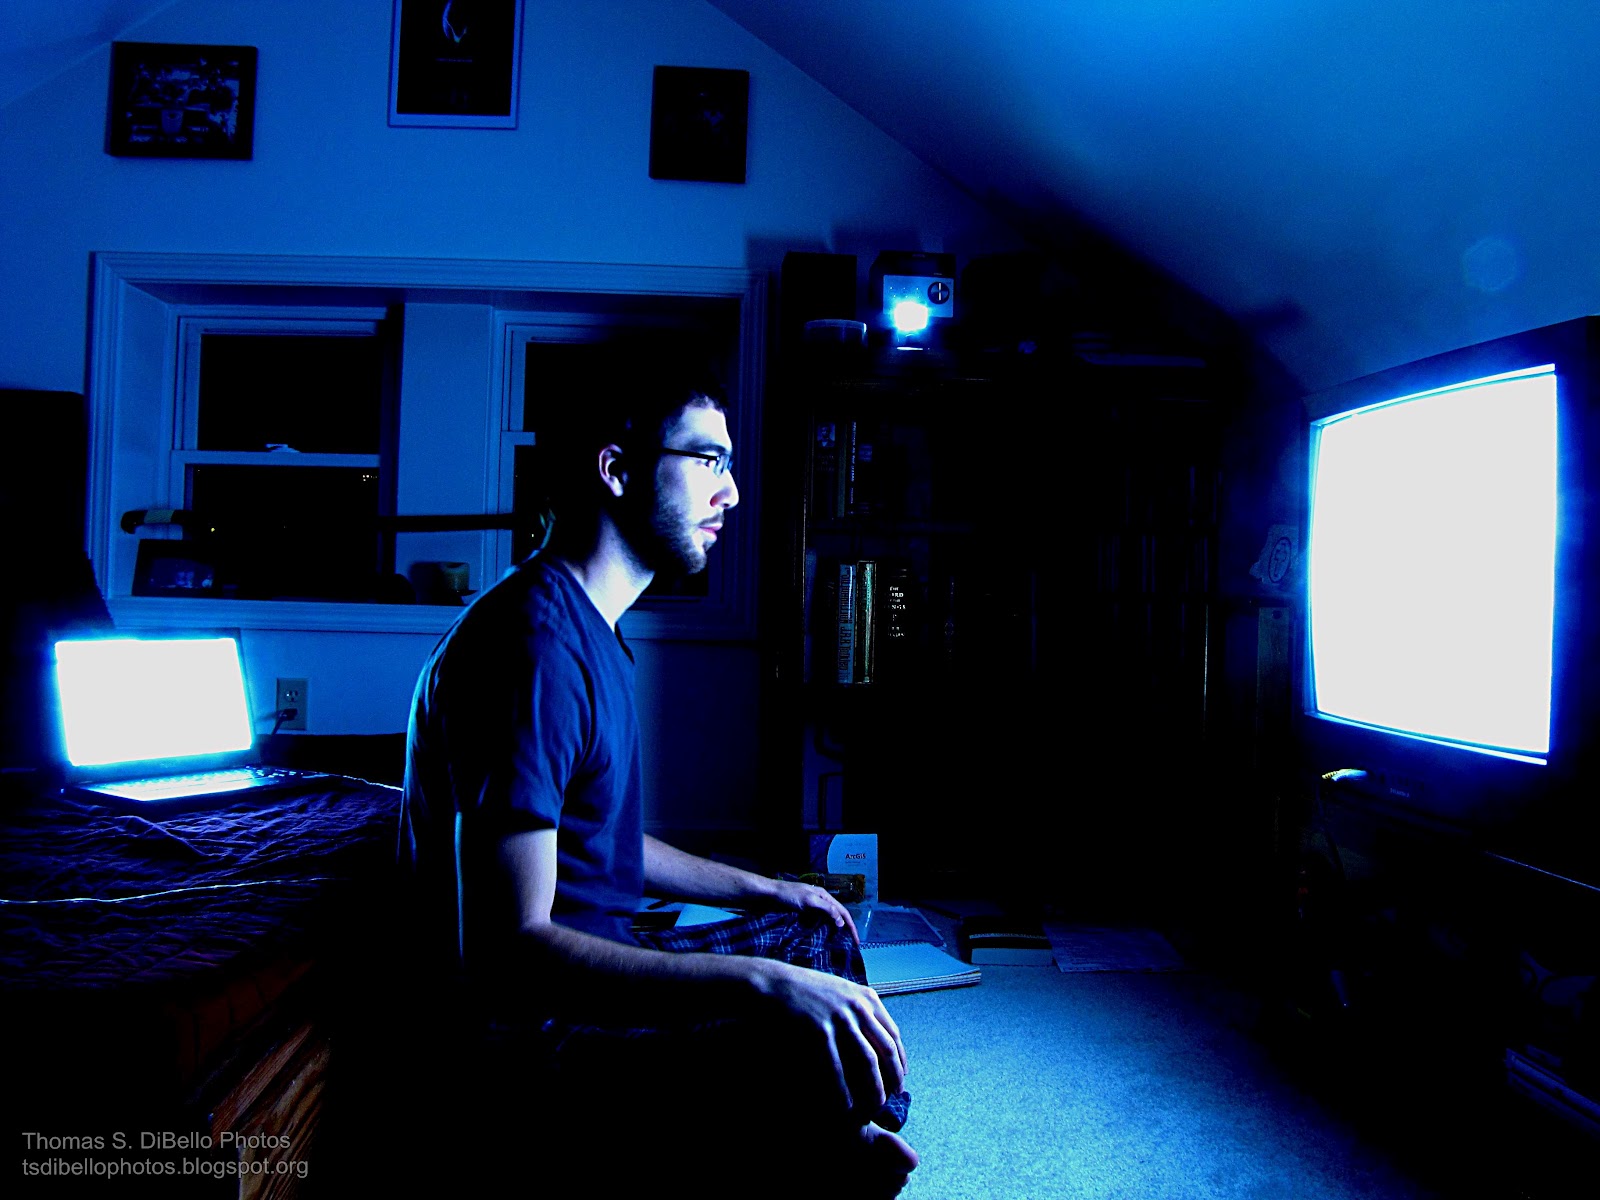 Включи экран спать. Человек за компьютером ночью. Телевизор в темноте. Человек перед телевизором. Человек перед экраном в темноте.